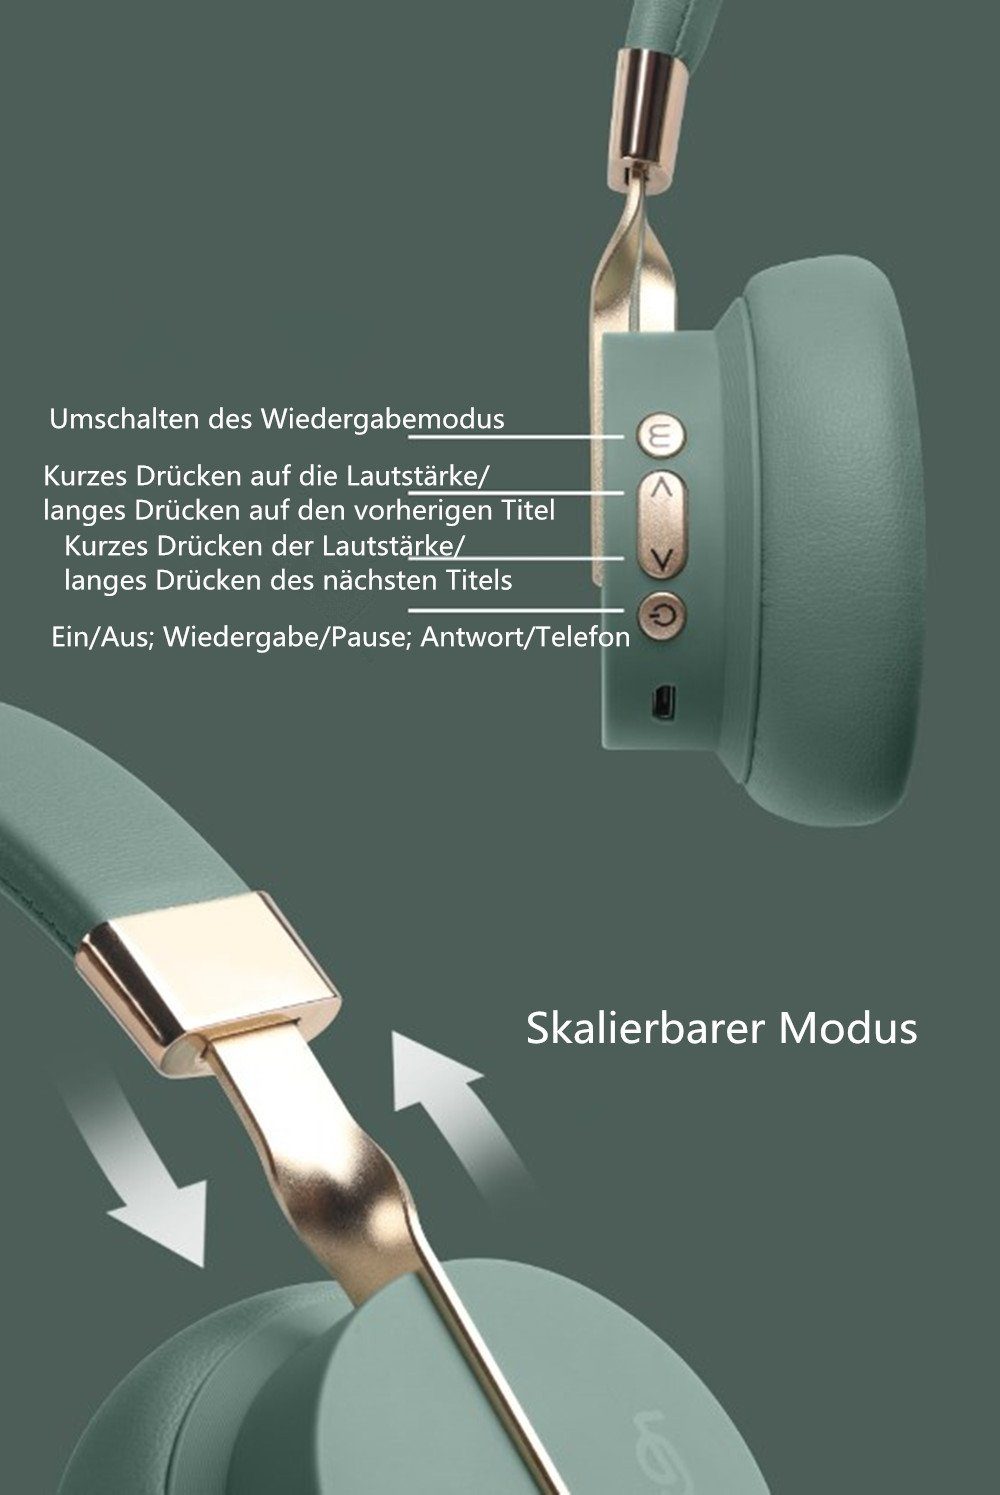 Bass,Wireless und Bluetooth-Kopfhörer Kabellos Bluetooth einstellbar,Intensiver Kopfhörer XDOVET (Einziehbar Over Ear,Stunden Headphones) Kopfhörer black Spielzeit